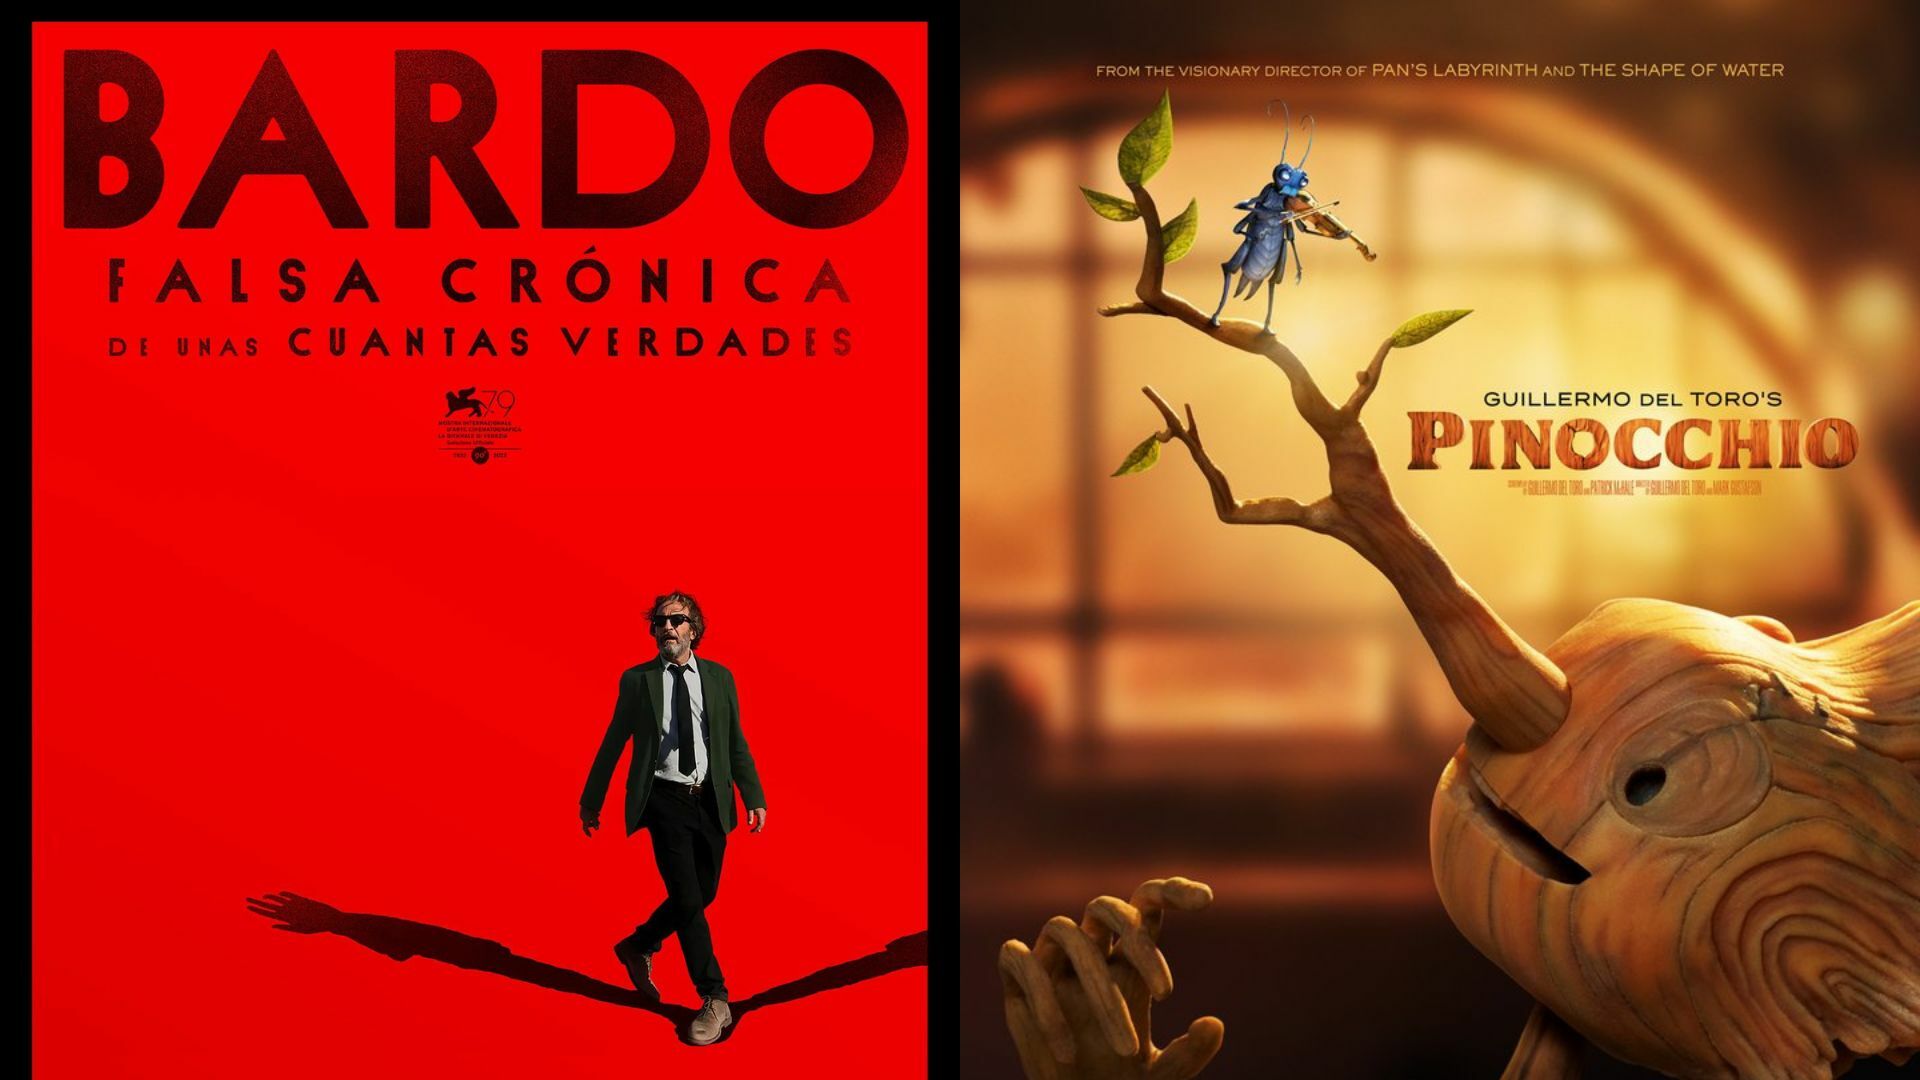 Bardo de Inárritu y Pinocchio de Guillermo del Toro dan primeros pasos al Oscar 2023